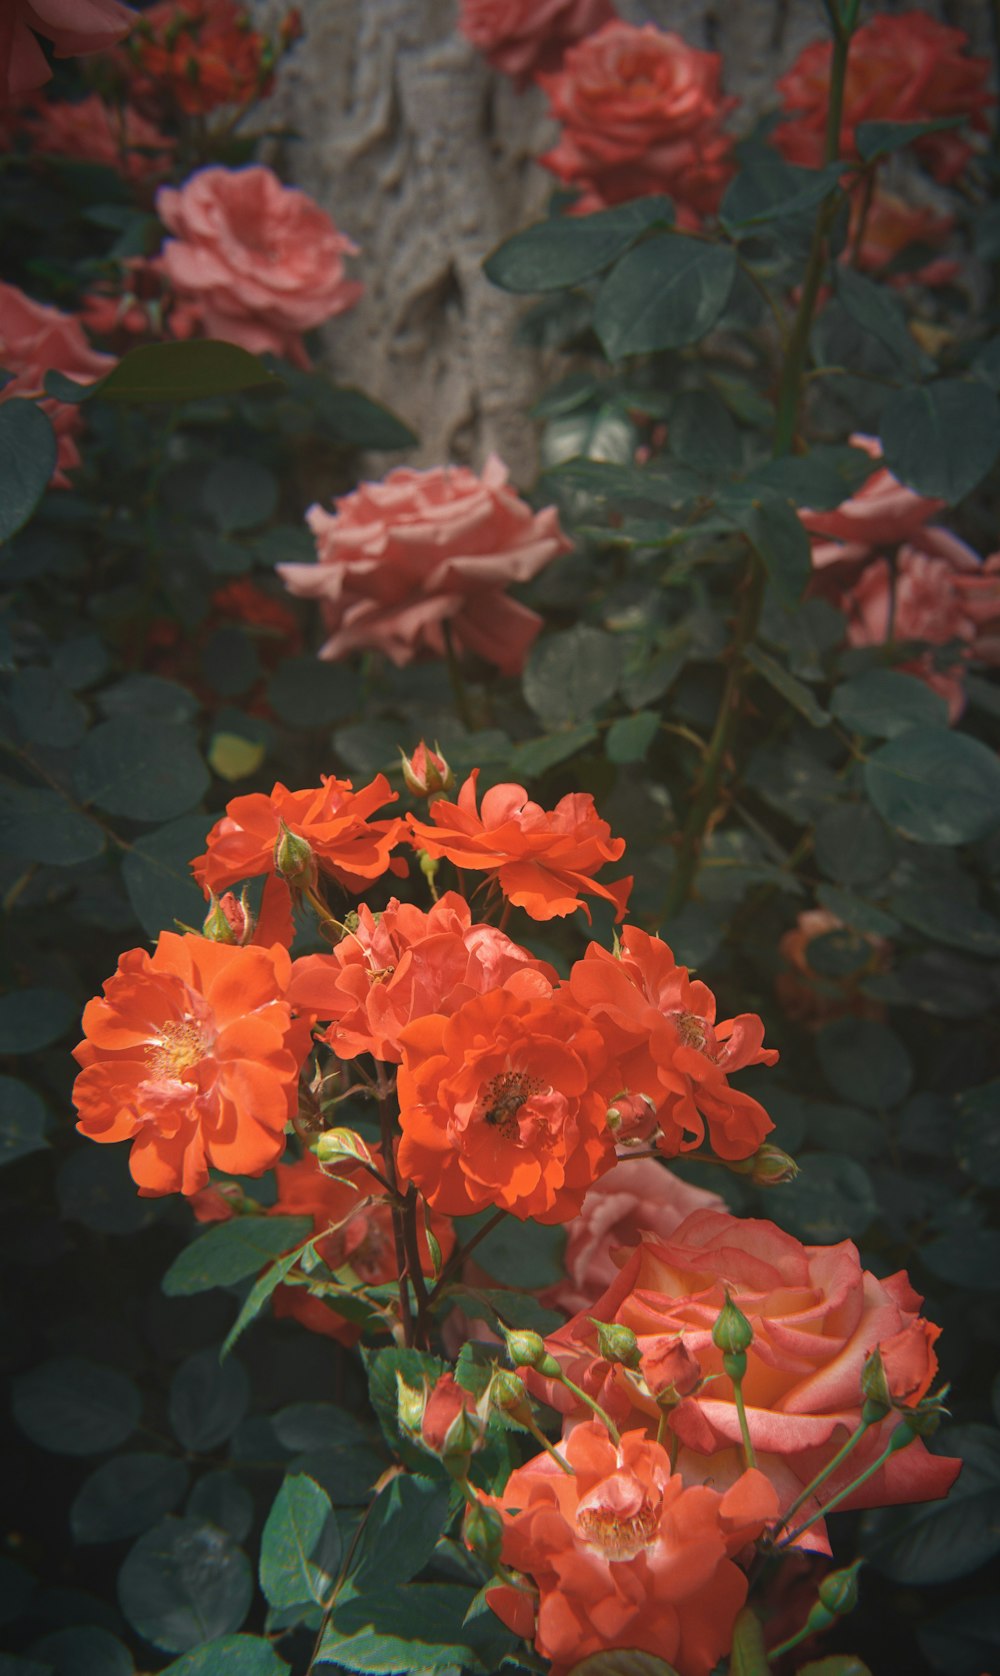 blooming orange rose flowers